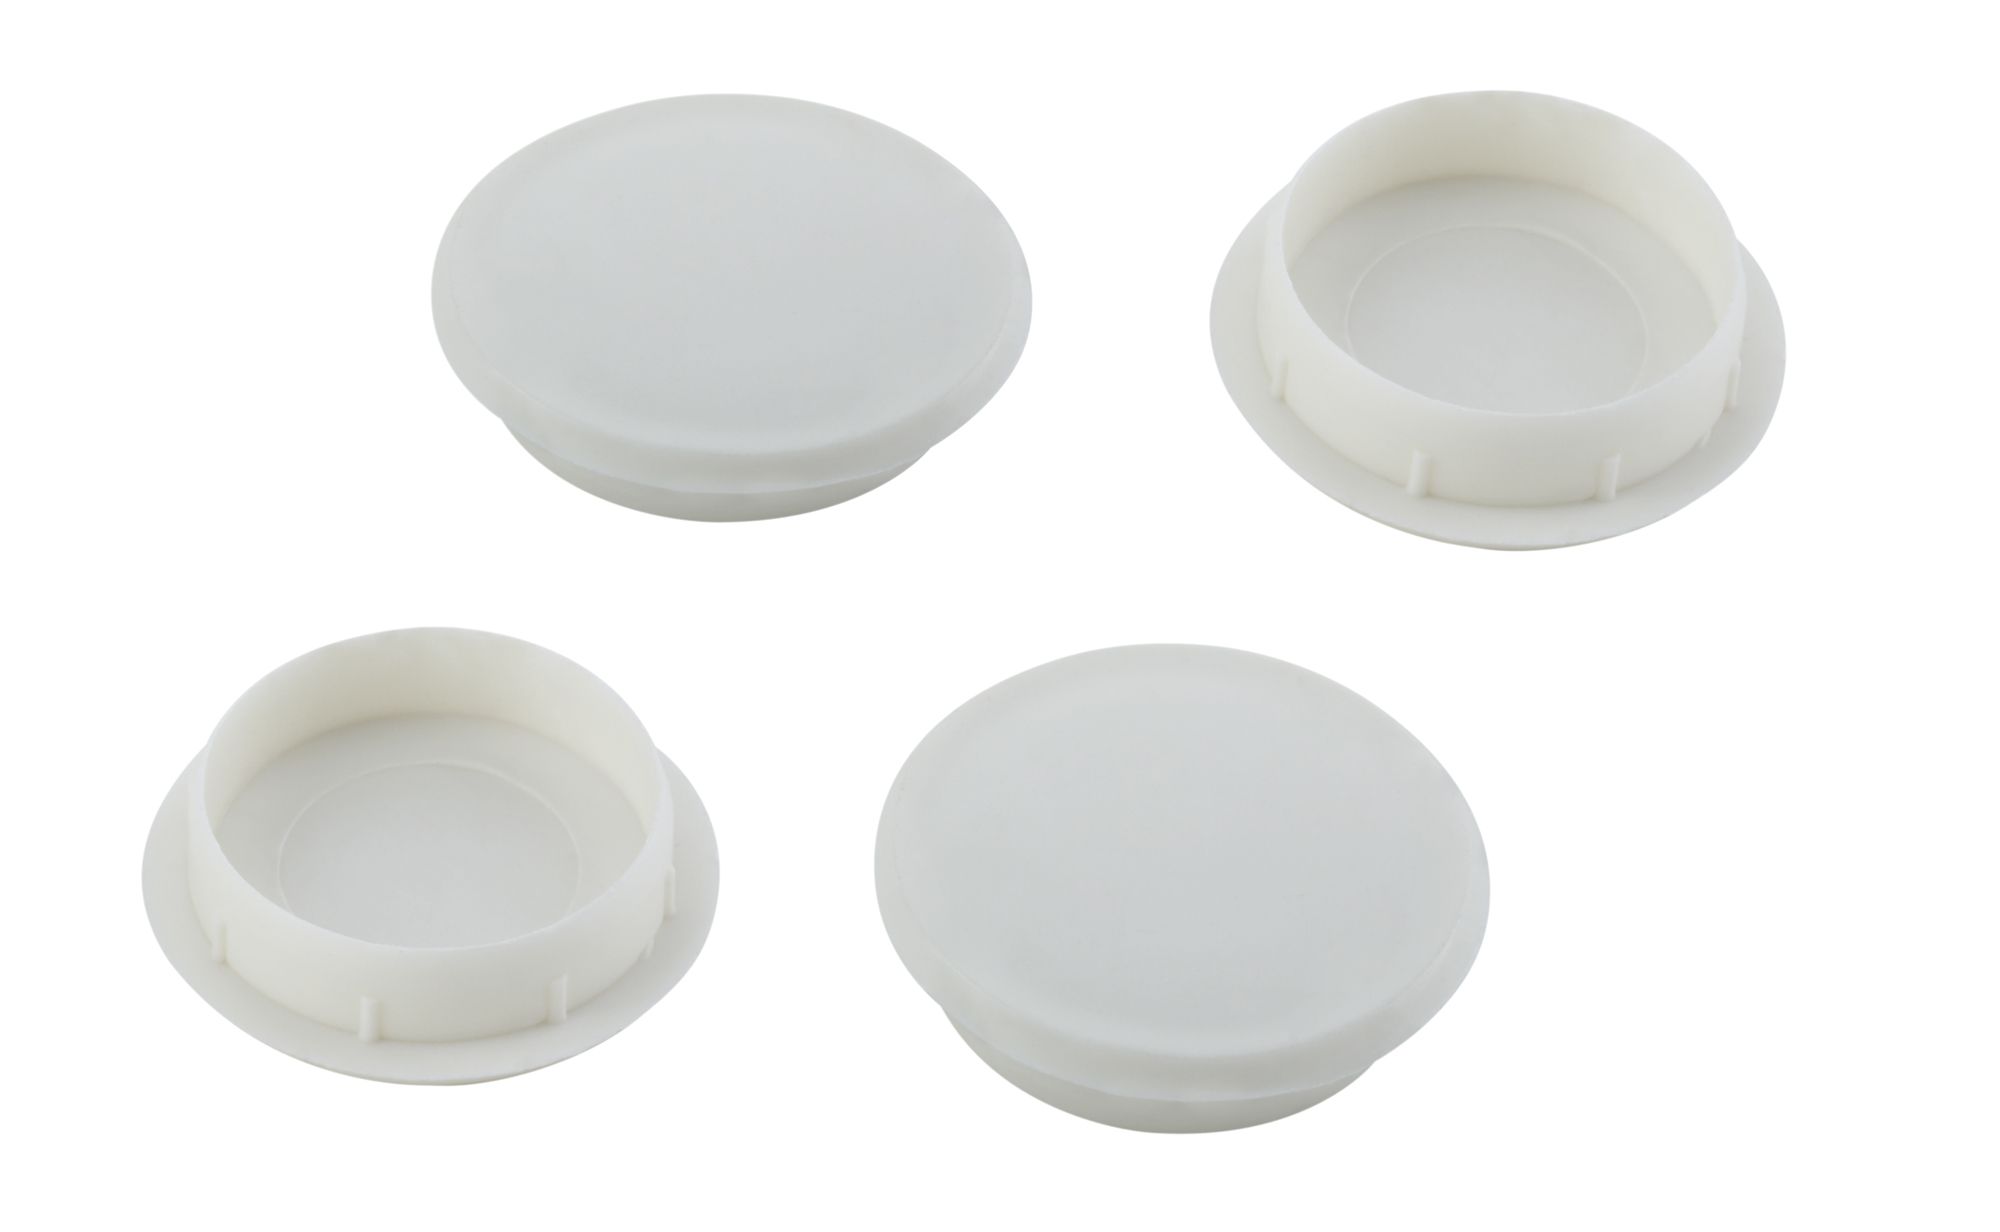 White Plastic Cover cap (Dia)26mm, Pack of 4